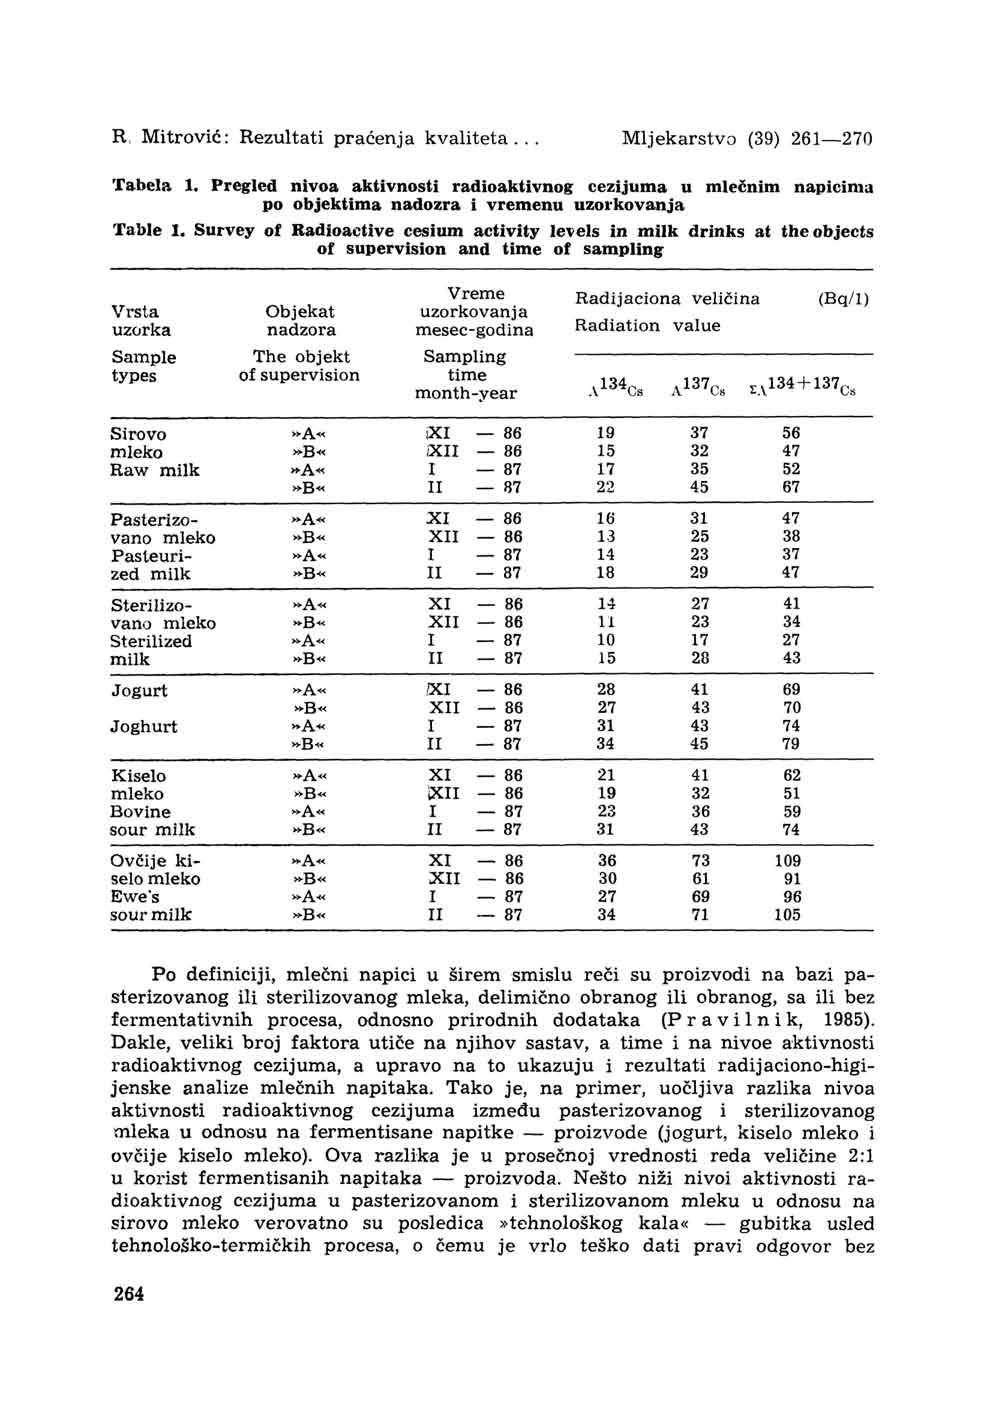 R, Mitro vic: Rezultati praćenja kvaliteta... Mljekarstvo (39) 261 270 Tabela 1. Pregled nivoa aktivnosti radioaktivnog cezijuma u mlečnim napicima po objektima nadozra i vremenu uzorkovanja Table 1.